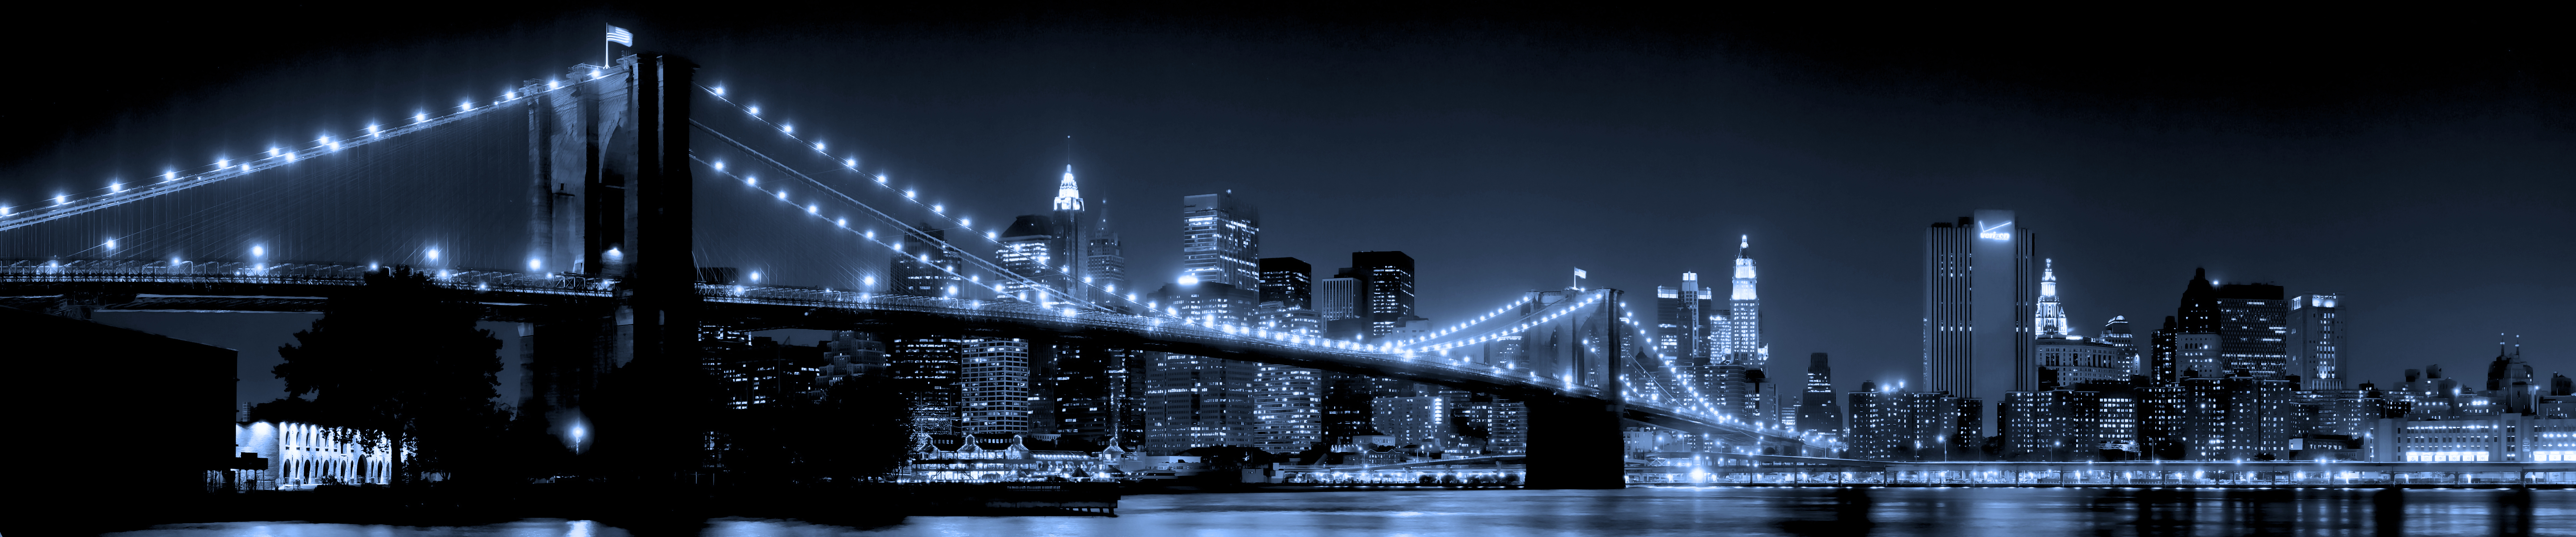 203608 скачать обои нью йорк, сделано человеком, бруклинский мост, манхэттен, мосты - заставки и картинки бесплатно